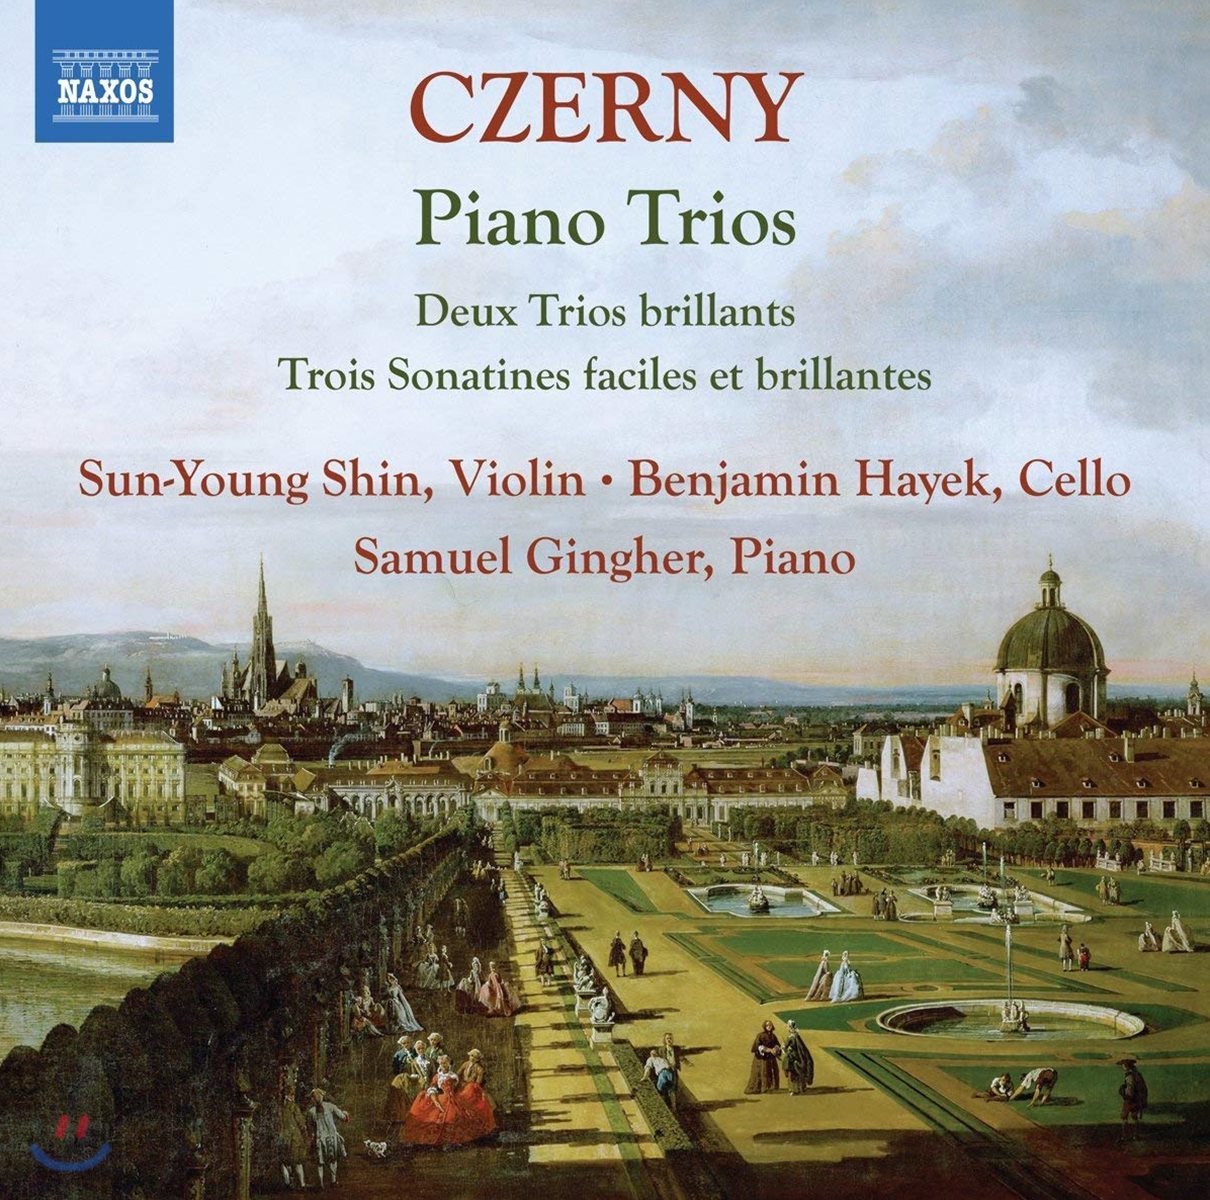 신선영 / Samuel Gingher 체르니: 피아노 트리오 - 화려한 삼중주 Op.211, 삼중주를 위한 3개의 화려한 소나티네 Op.104 (Czerny: Piano Trios)